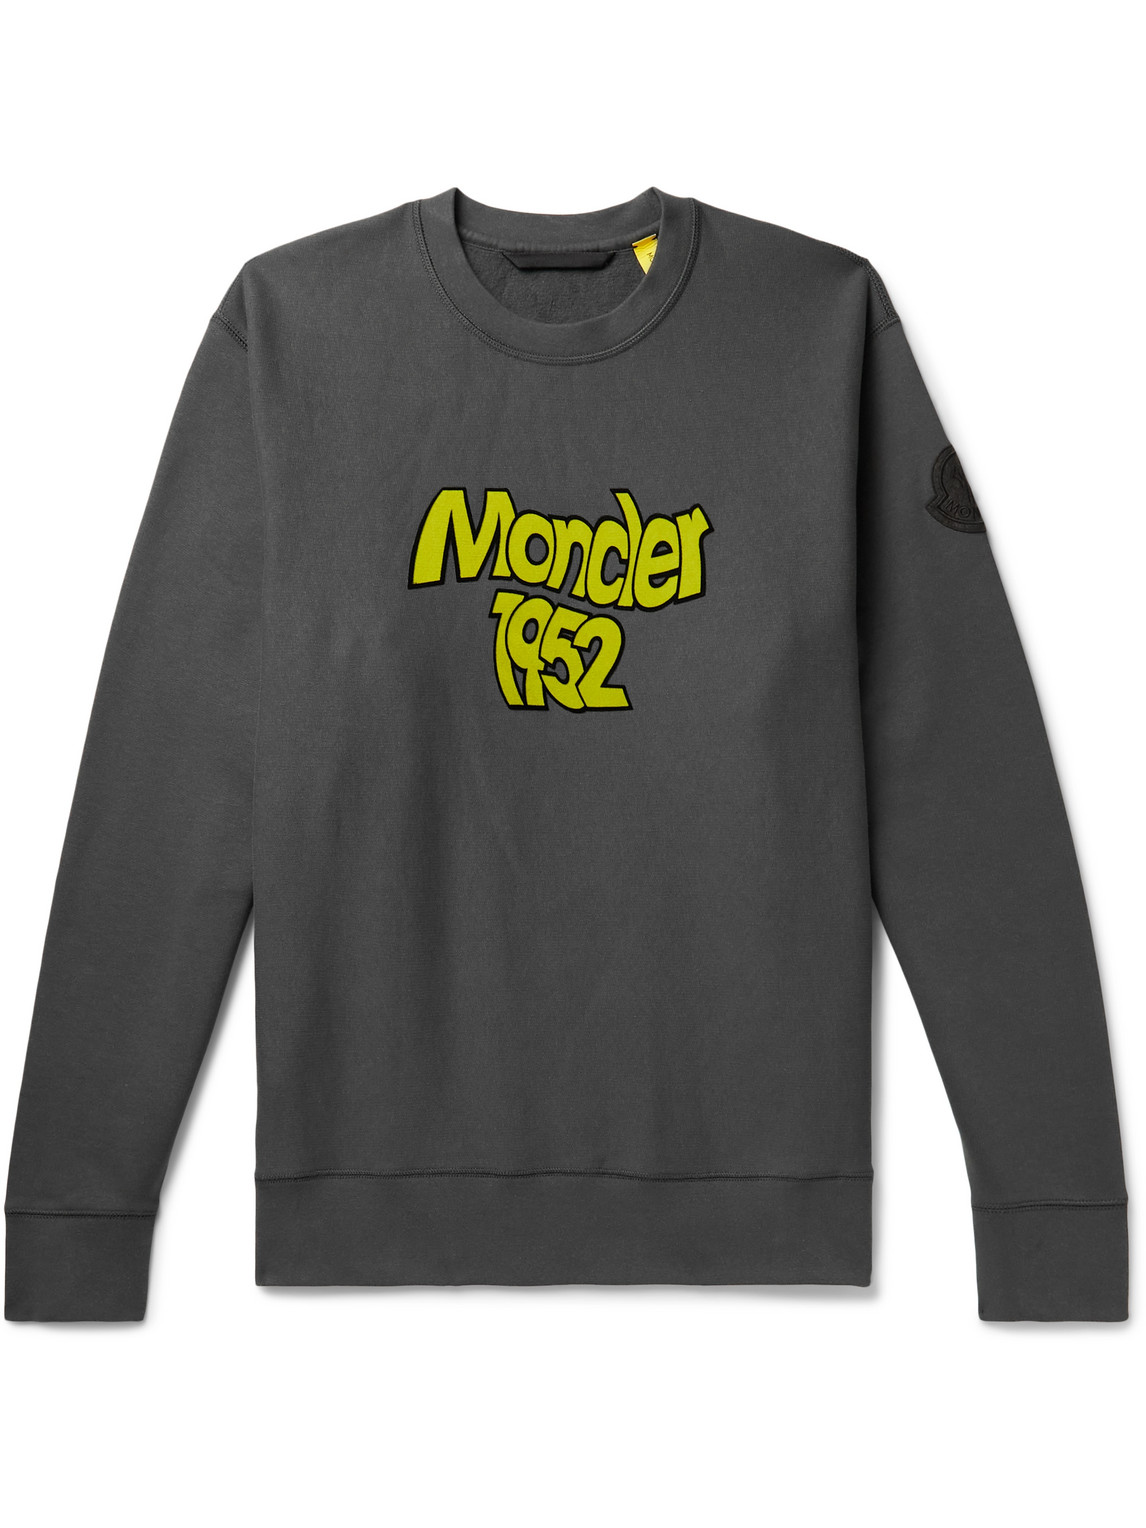 Moncler Genius 2 Moncler 1952 Logo-flocked Cotton-jersey Sweatshirt In Gray